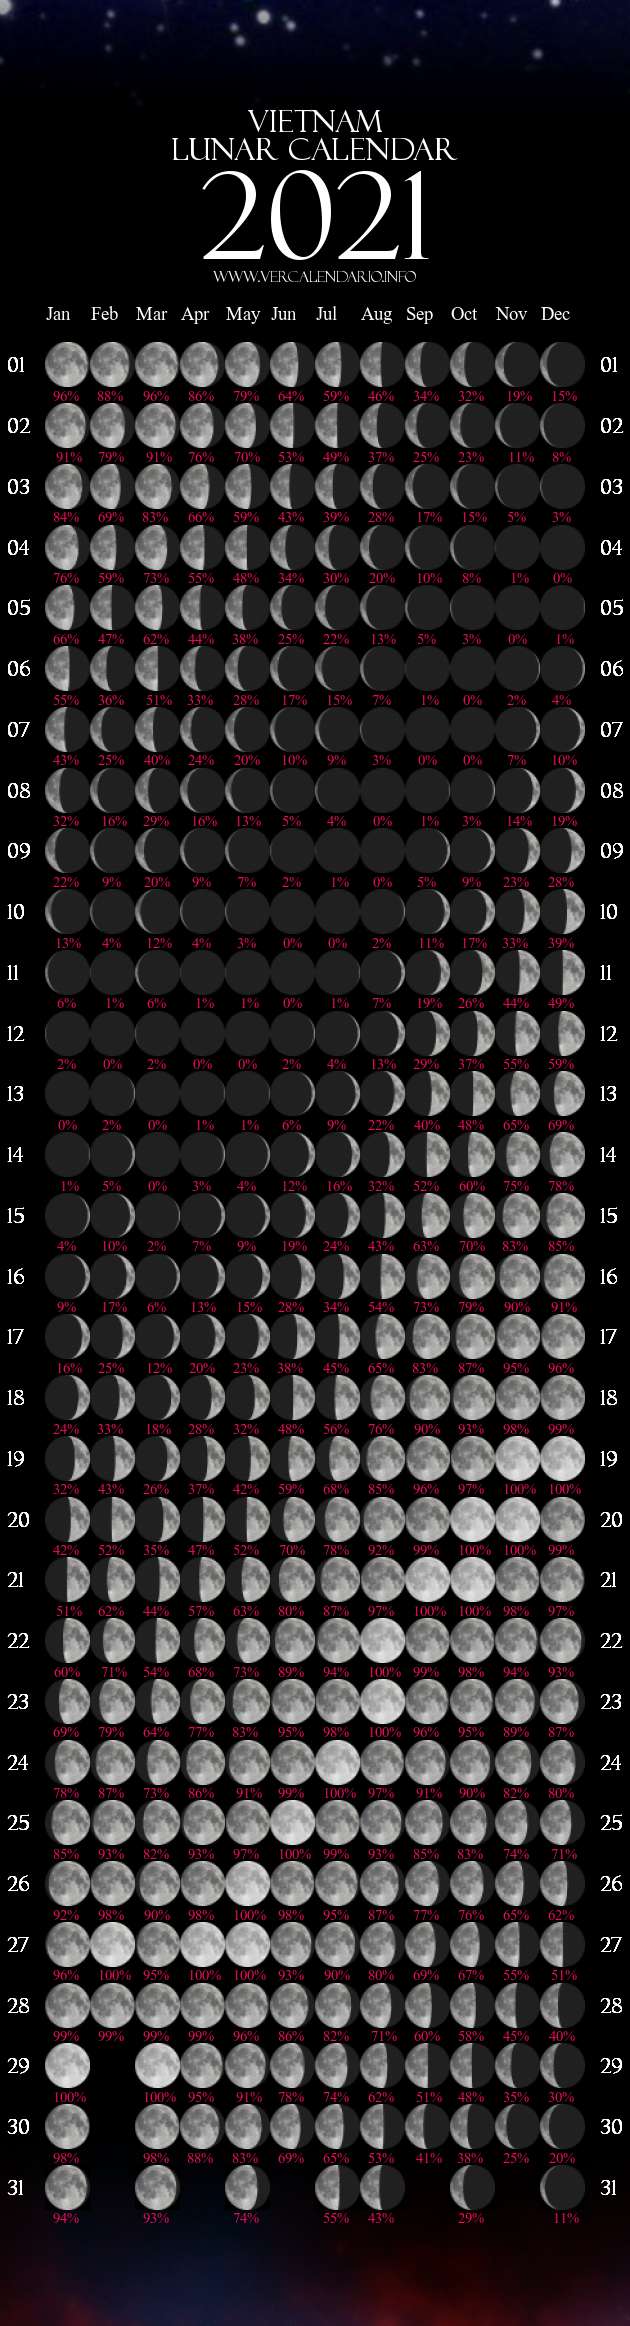 Lunar Calendar 2021 (VietNam)